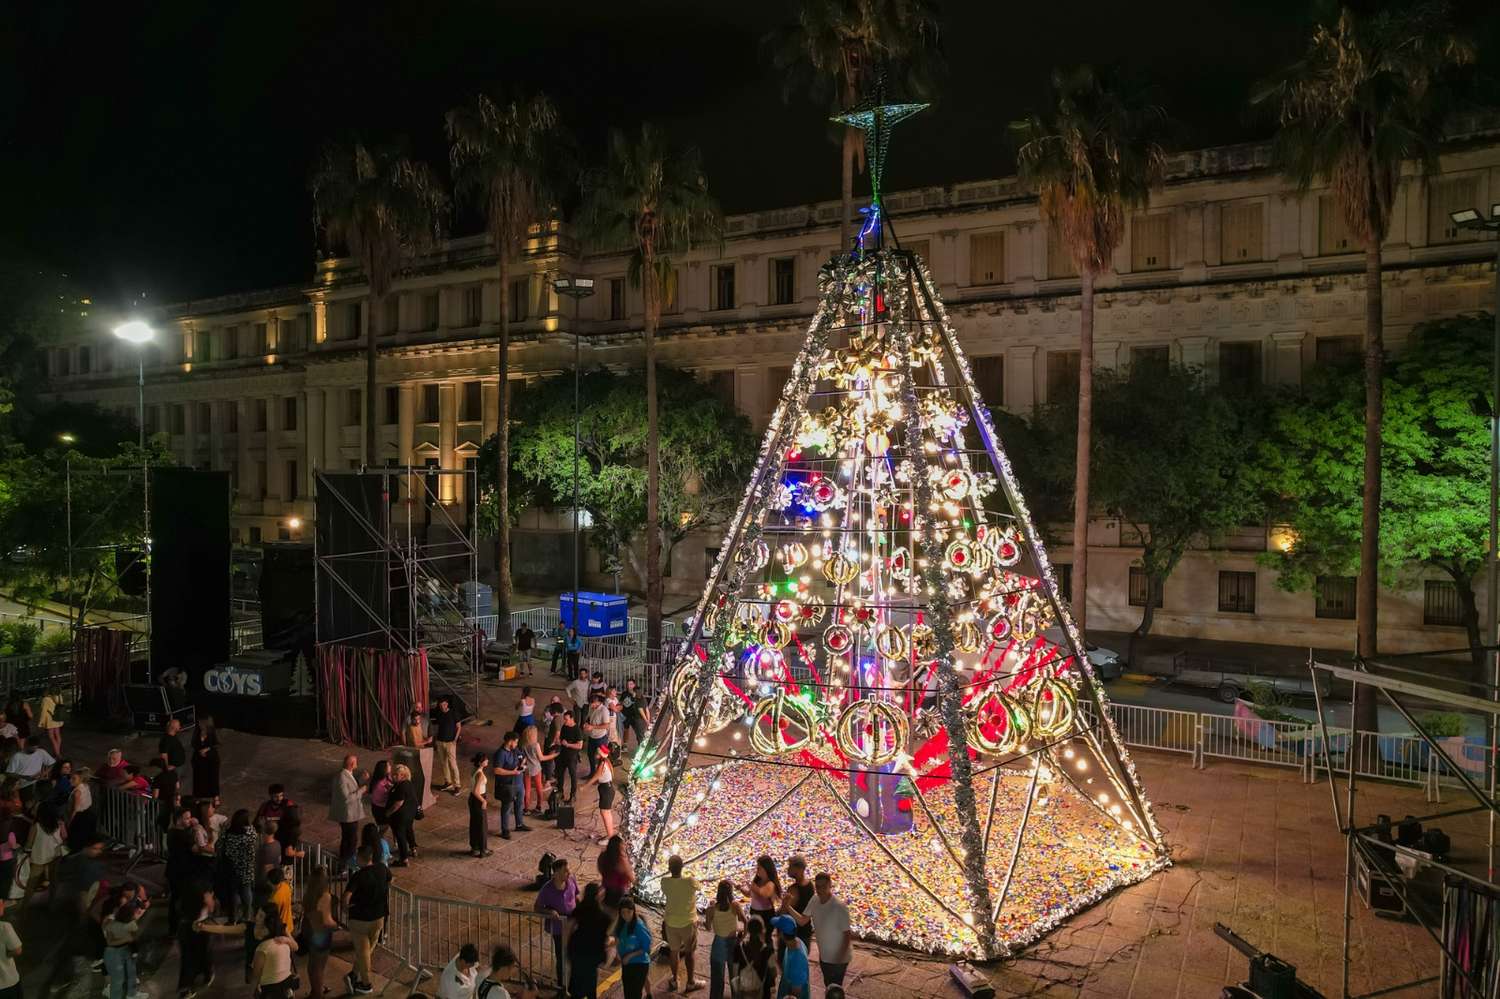 Con una altura de 14 metros, el árbol se destaca por su estrella tridimensional de tres metros de altura, elaborada con latas brillantes.